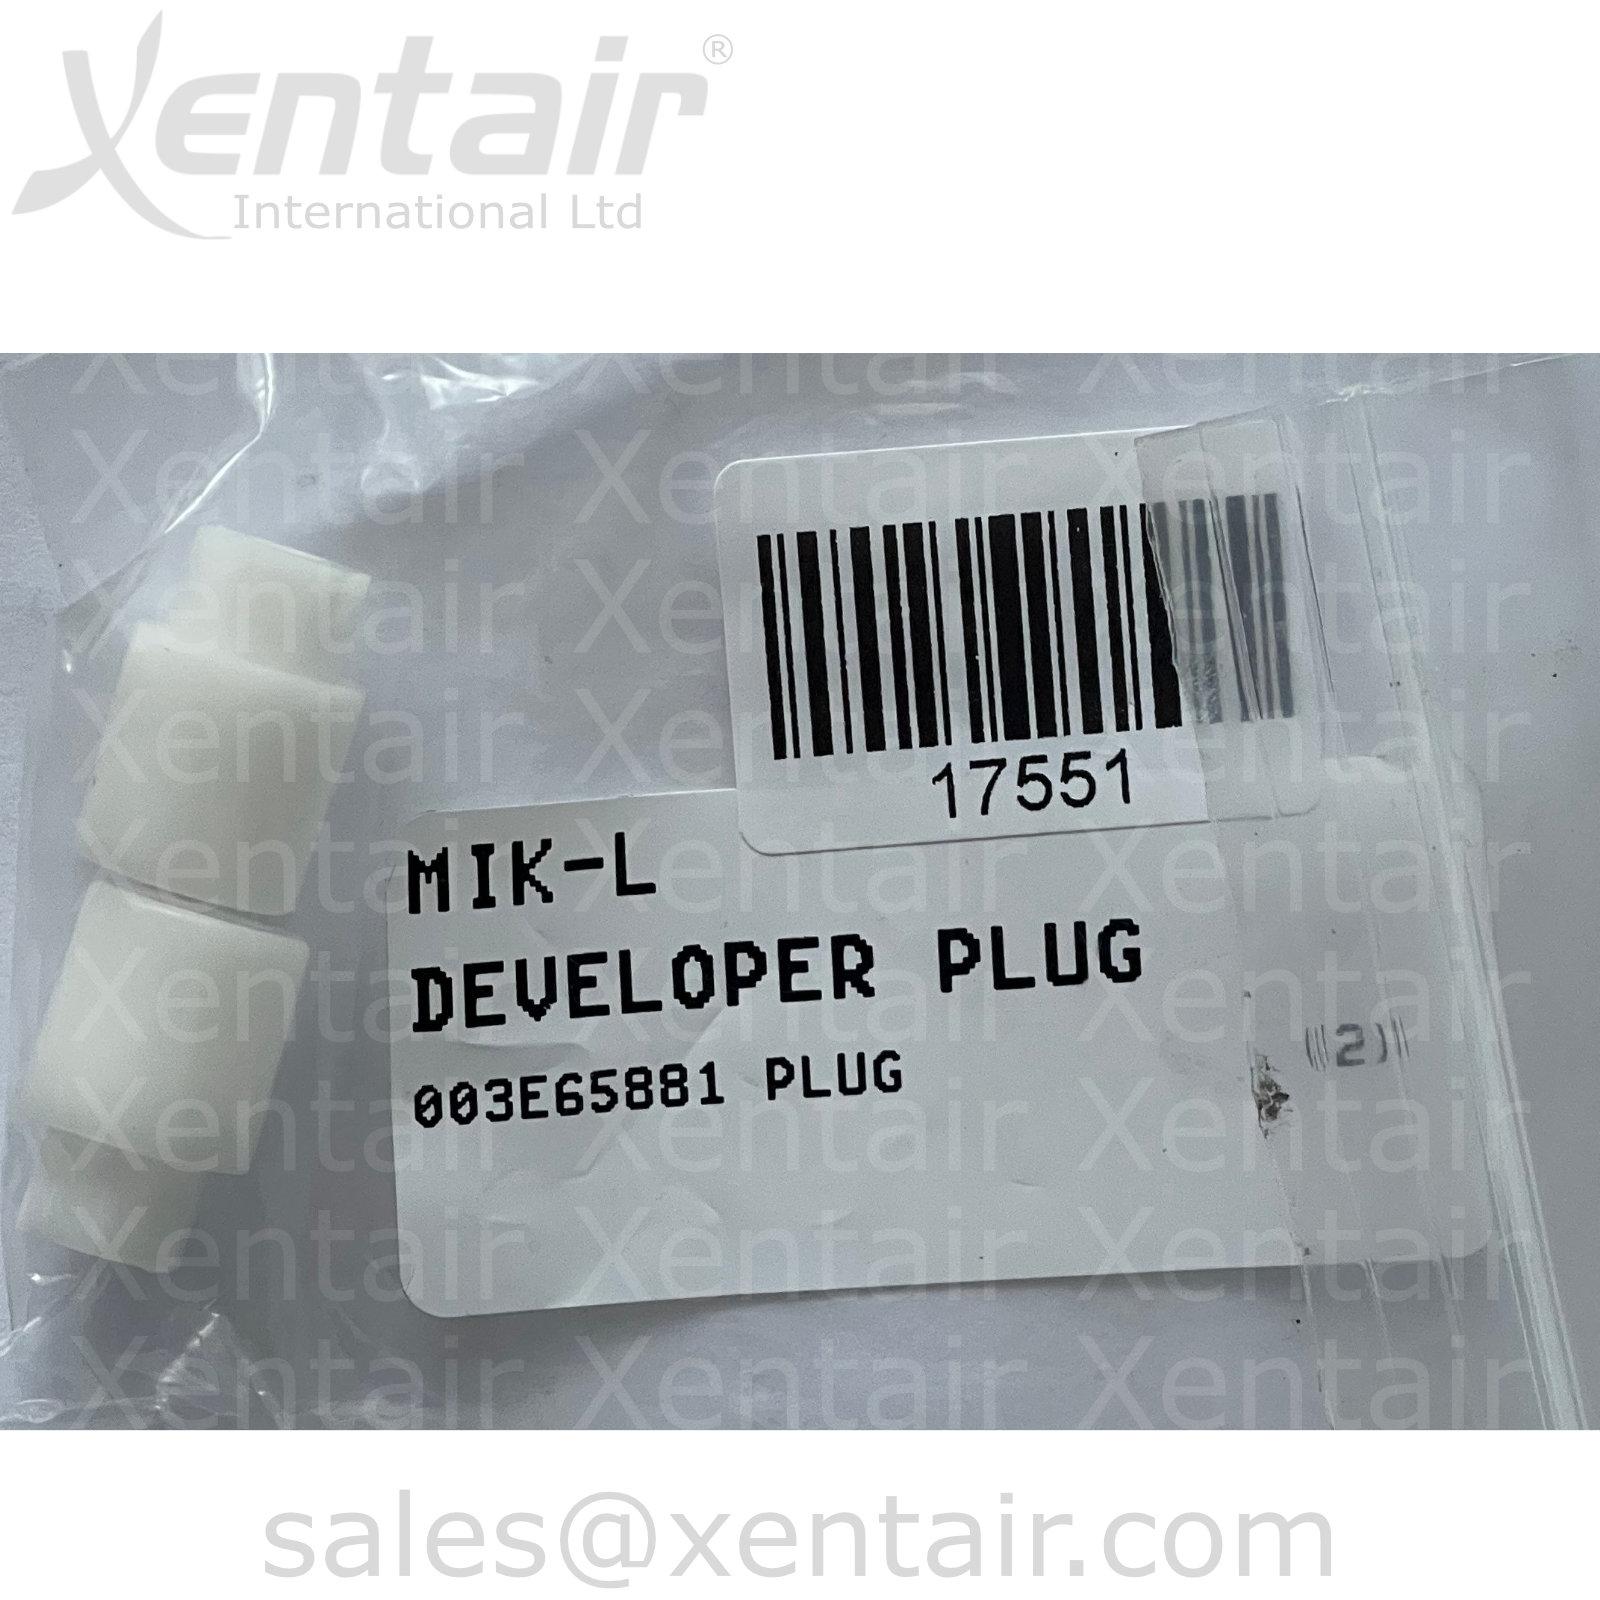 Xerox® iGen3™ Developer Plug 003E65881 3E65881